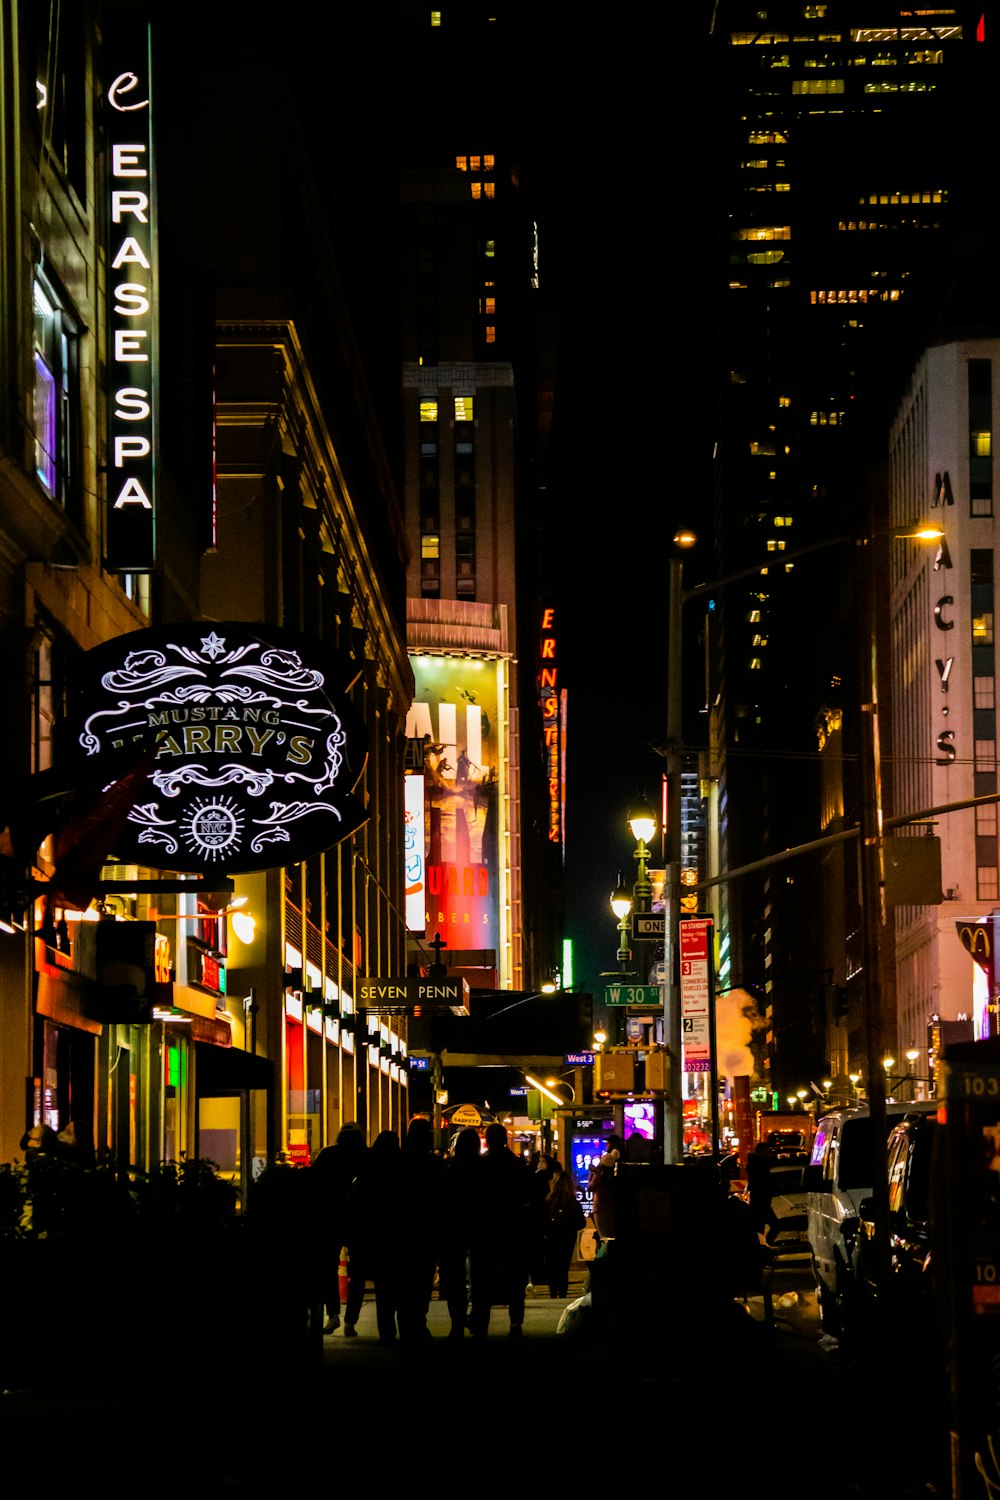 Une rue animée de la ville la nuit avec des enseignes au néon